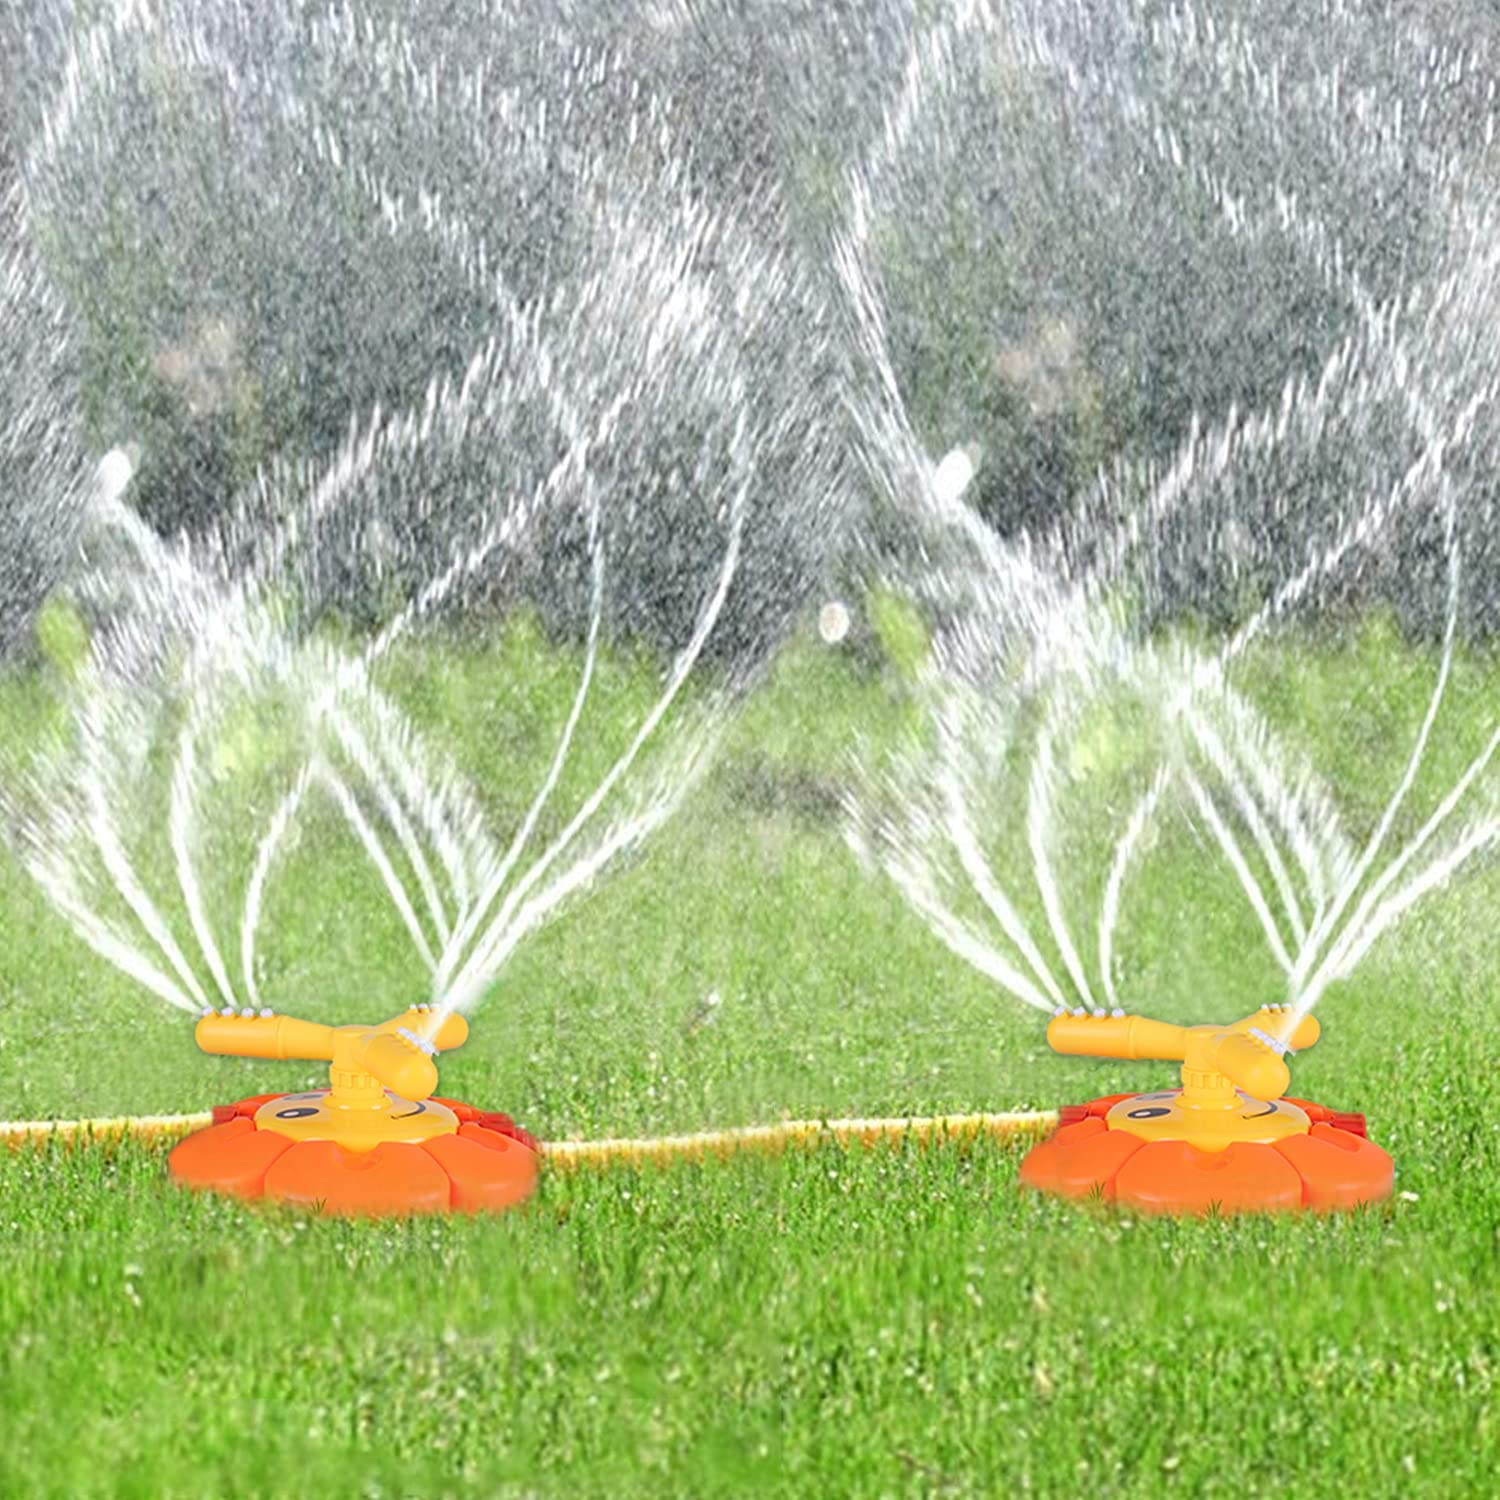 Canrulo Sprinkler Kids Lawn Sprinkler Outdoor Water Play Kids Sprinklers for Yard Outdoor Activitie Sprinklers for Kids Outdoor Water Play Water Blasters Yellow